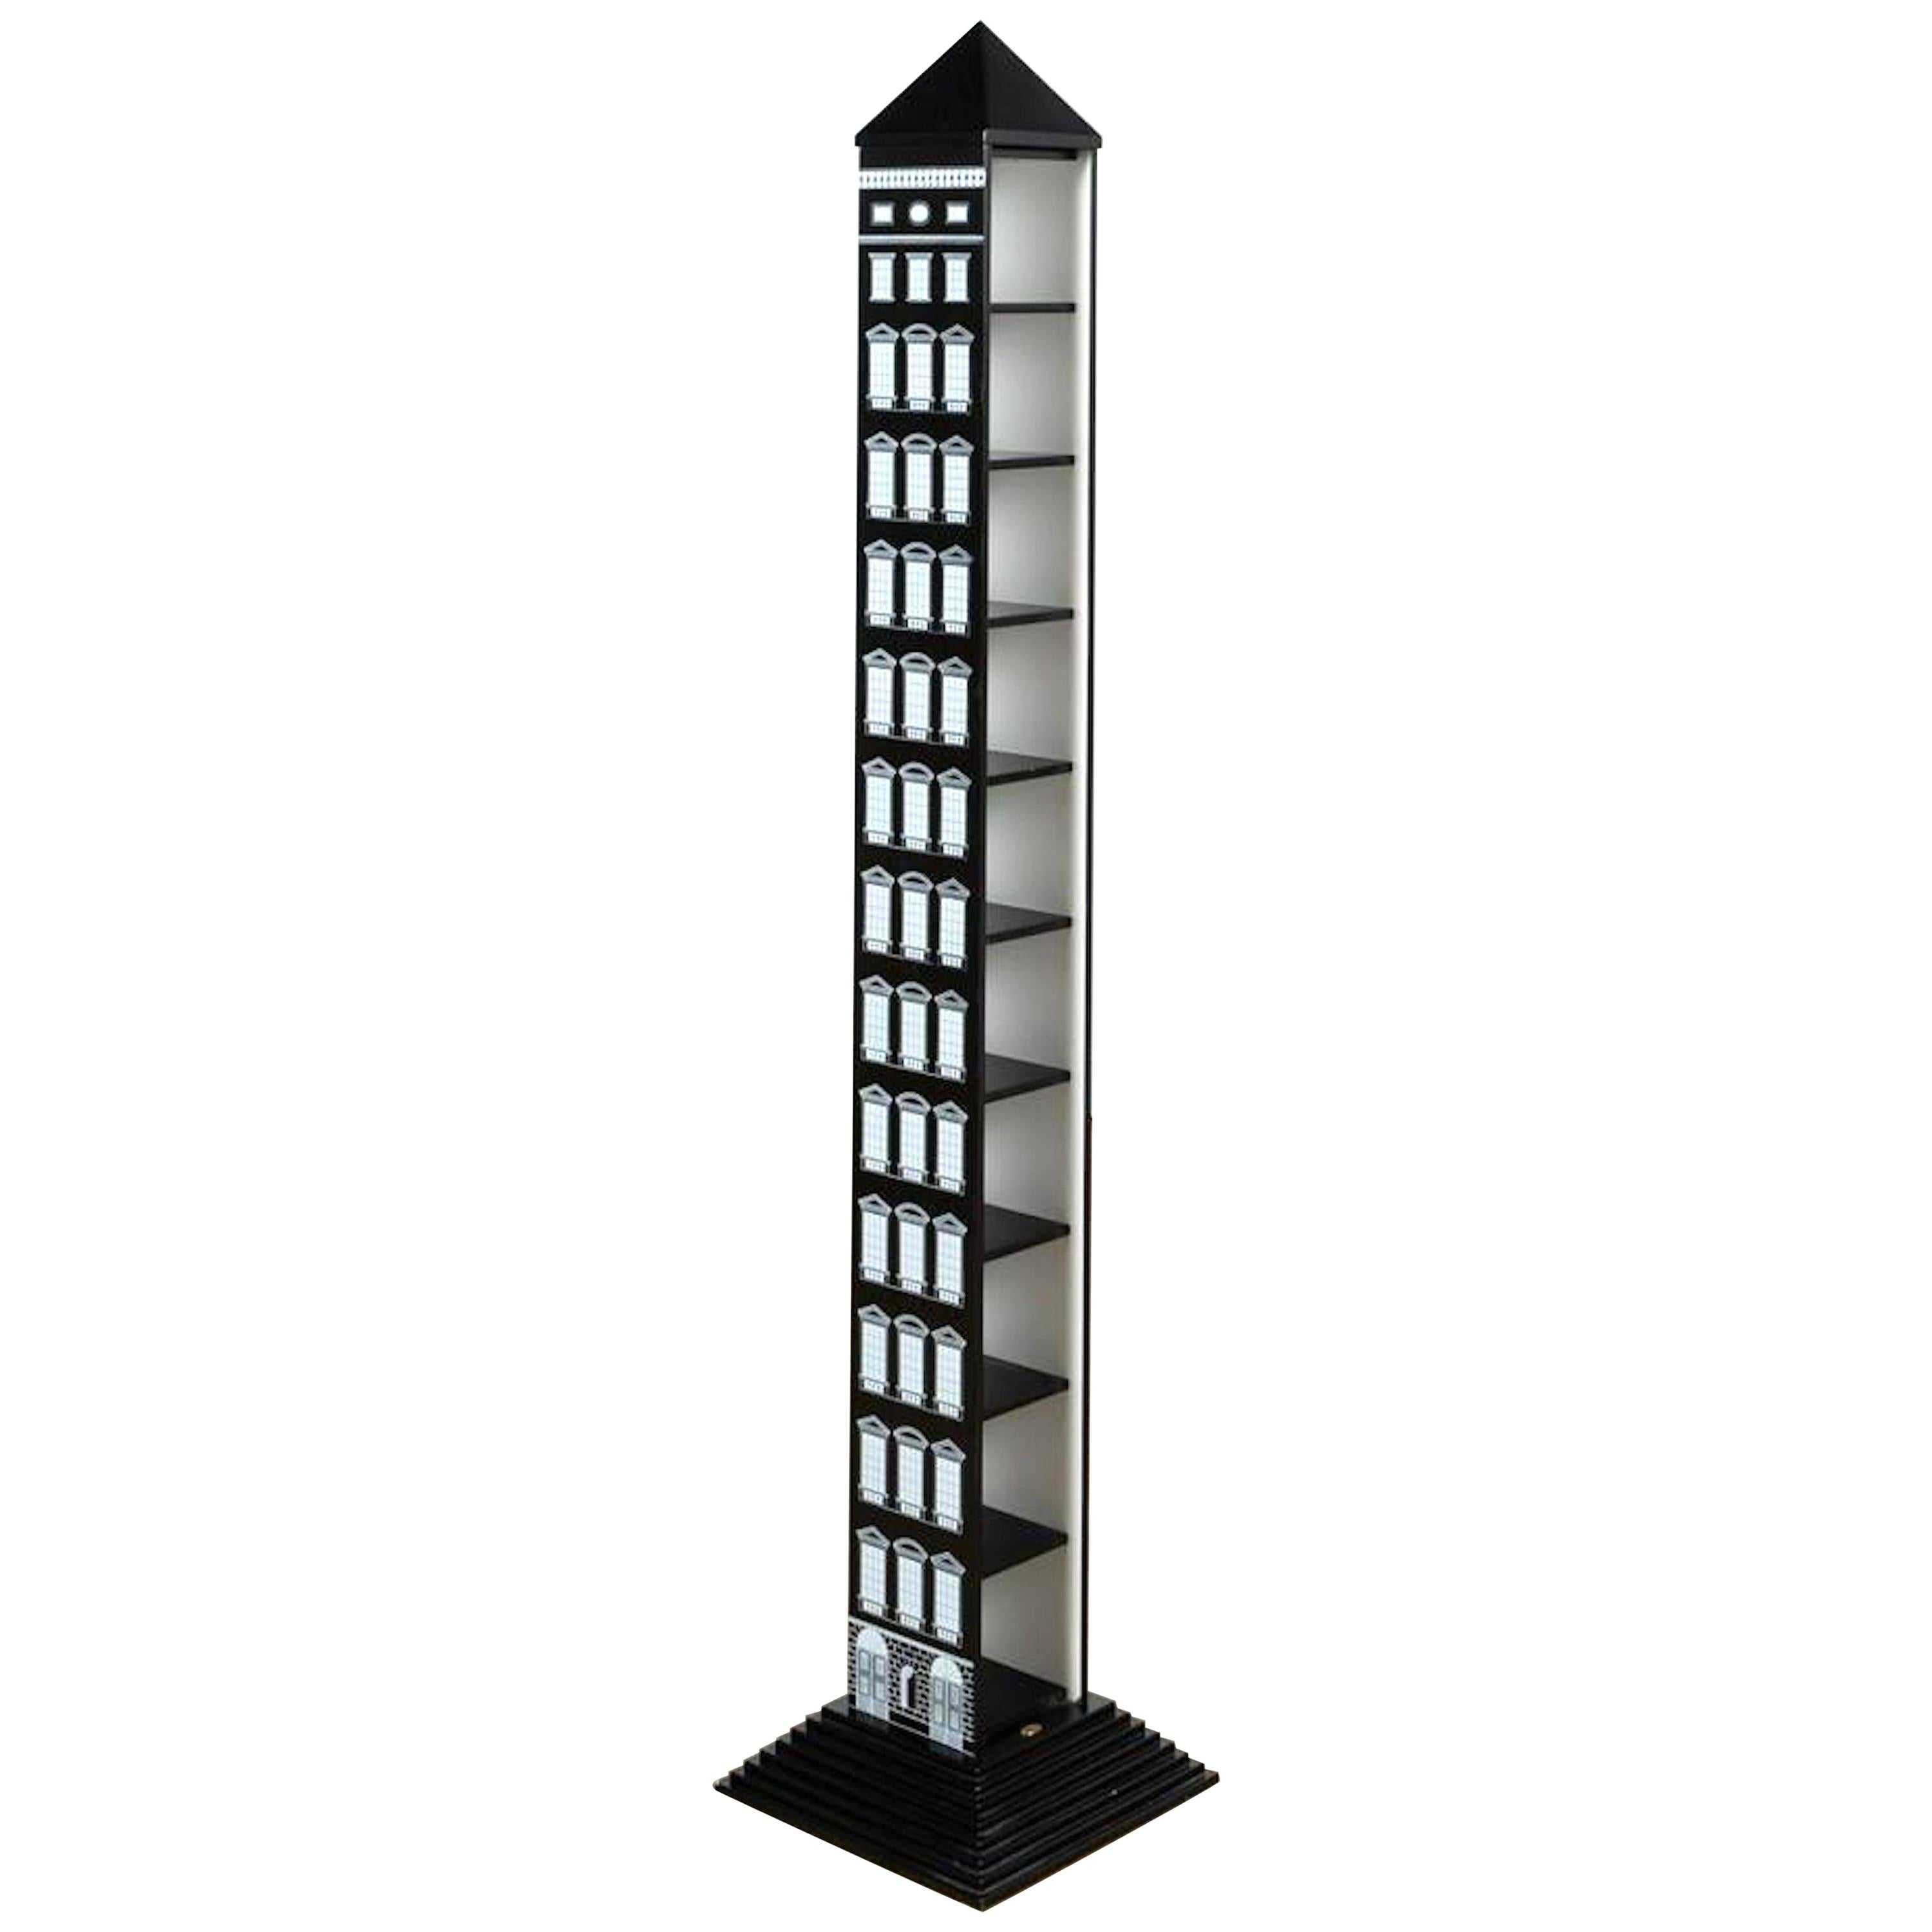 Obelisk Étagère/ Shelf 'Architettura' by Fornasetti